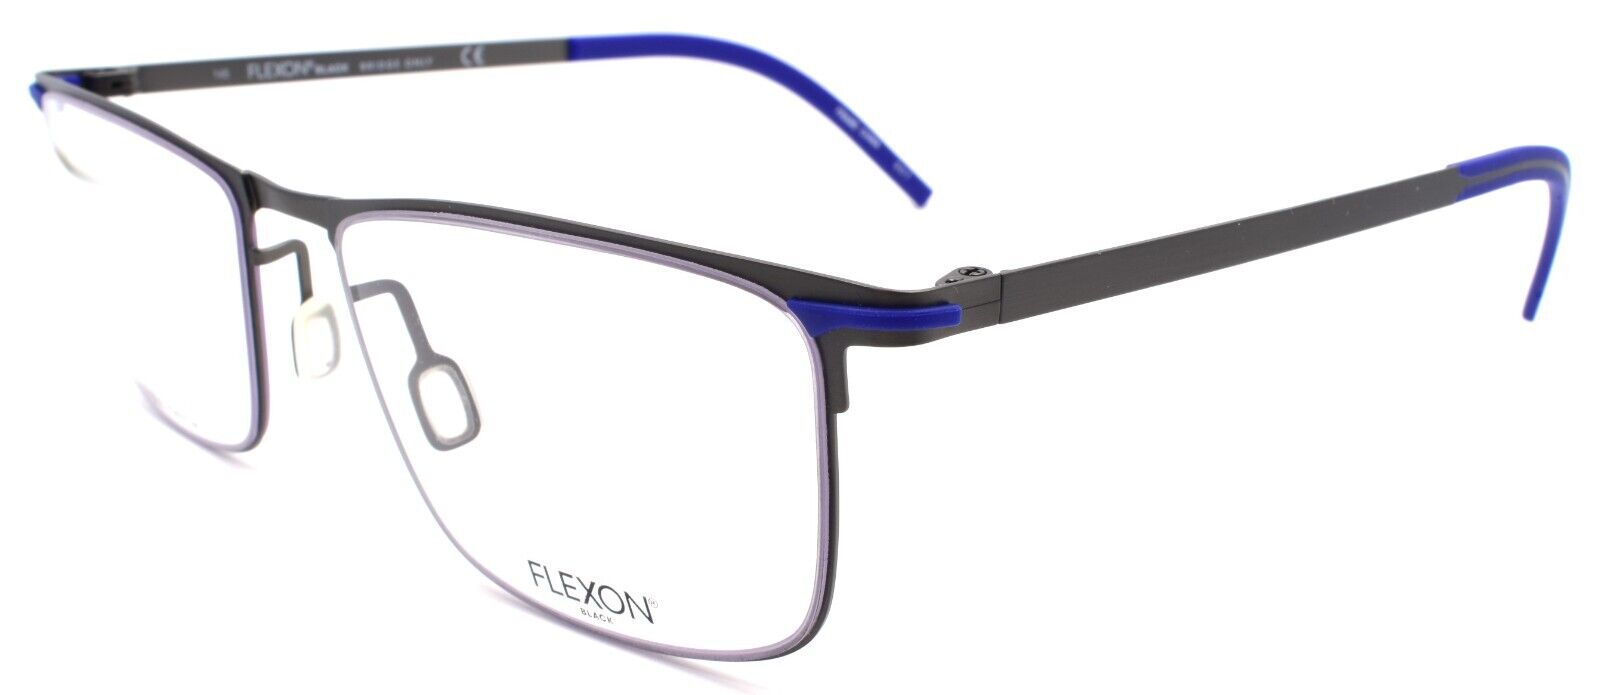 1-Flexon B2005 033 Men's Eyeglasses Frames Gunmetal 55-19-145 Flexible Titanium-883900204538-IKSpecs